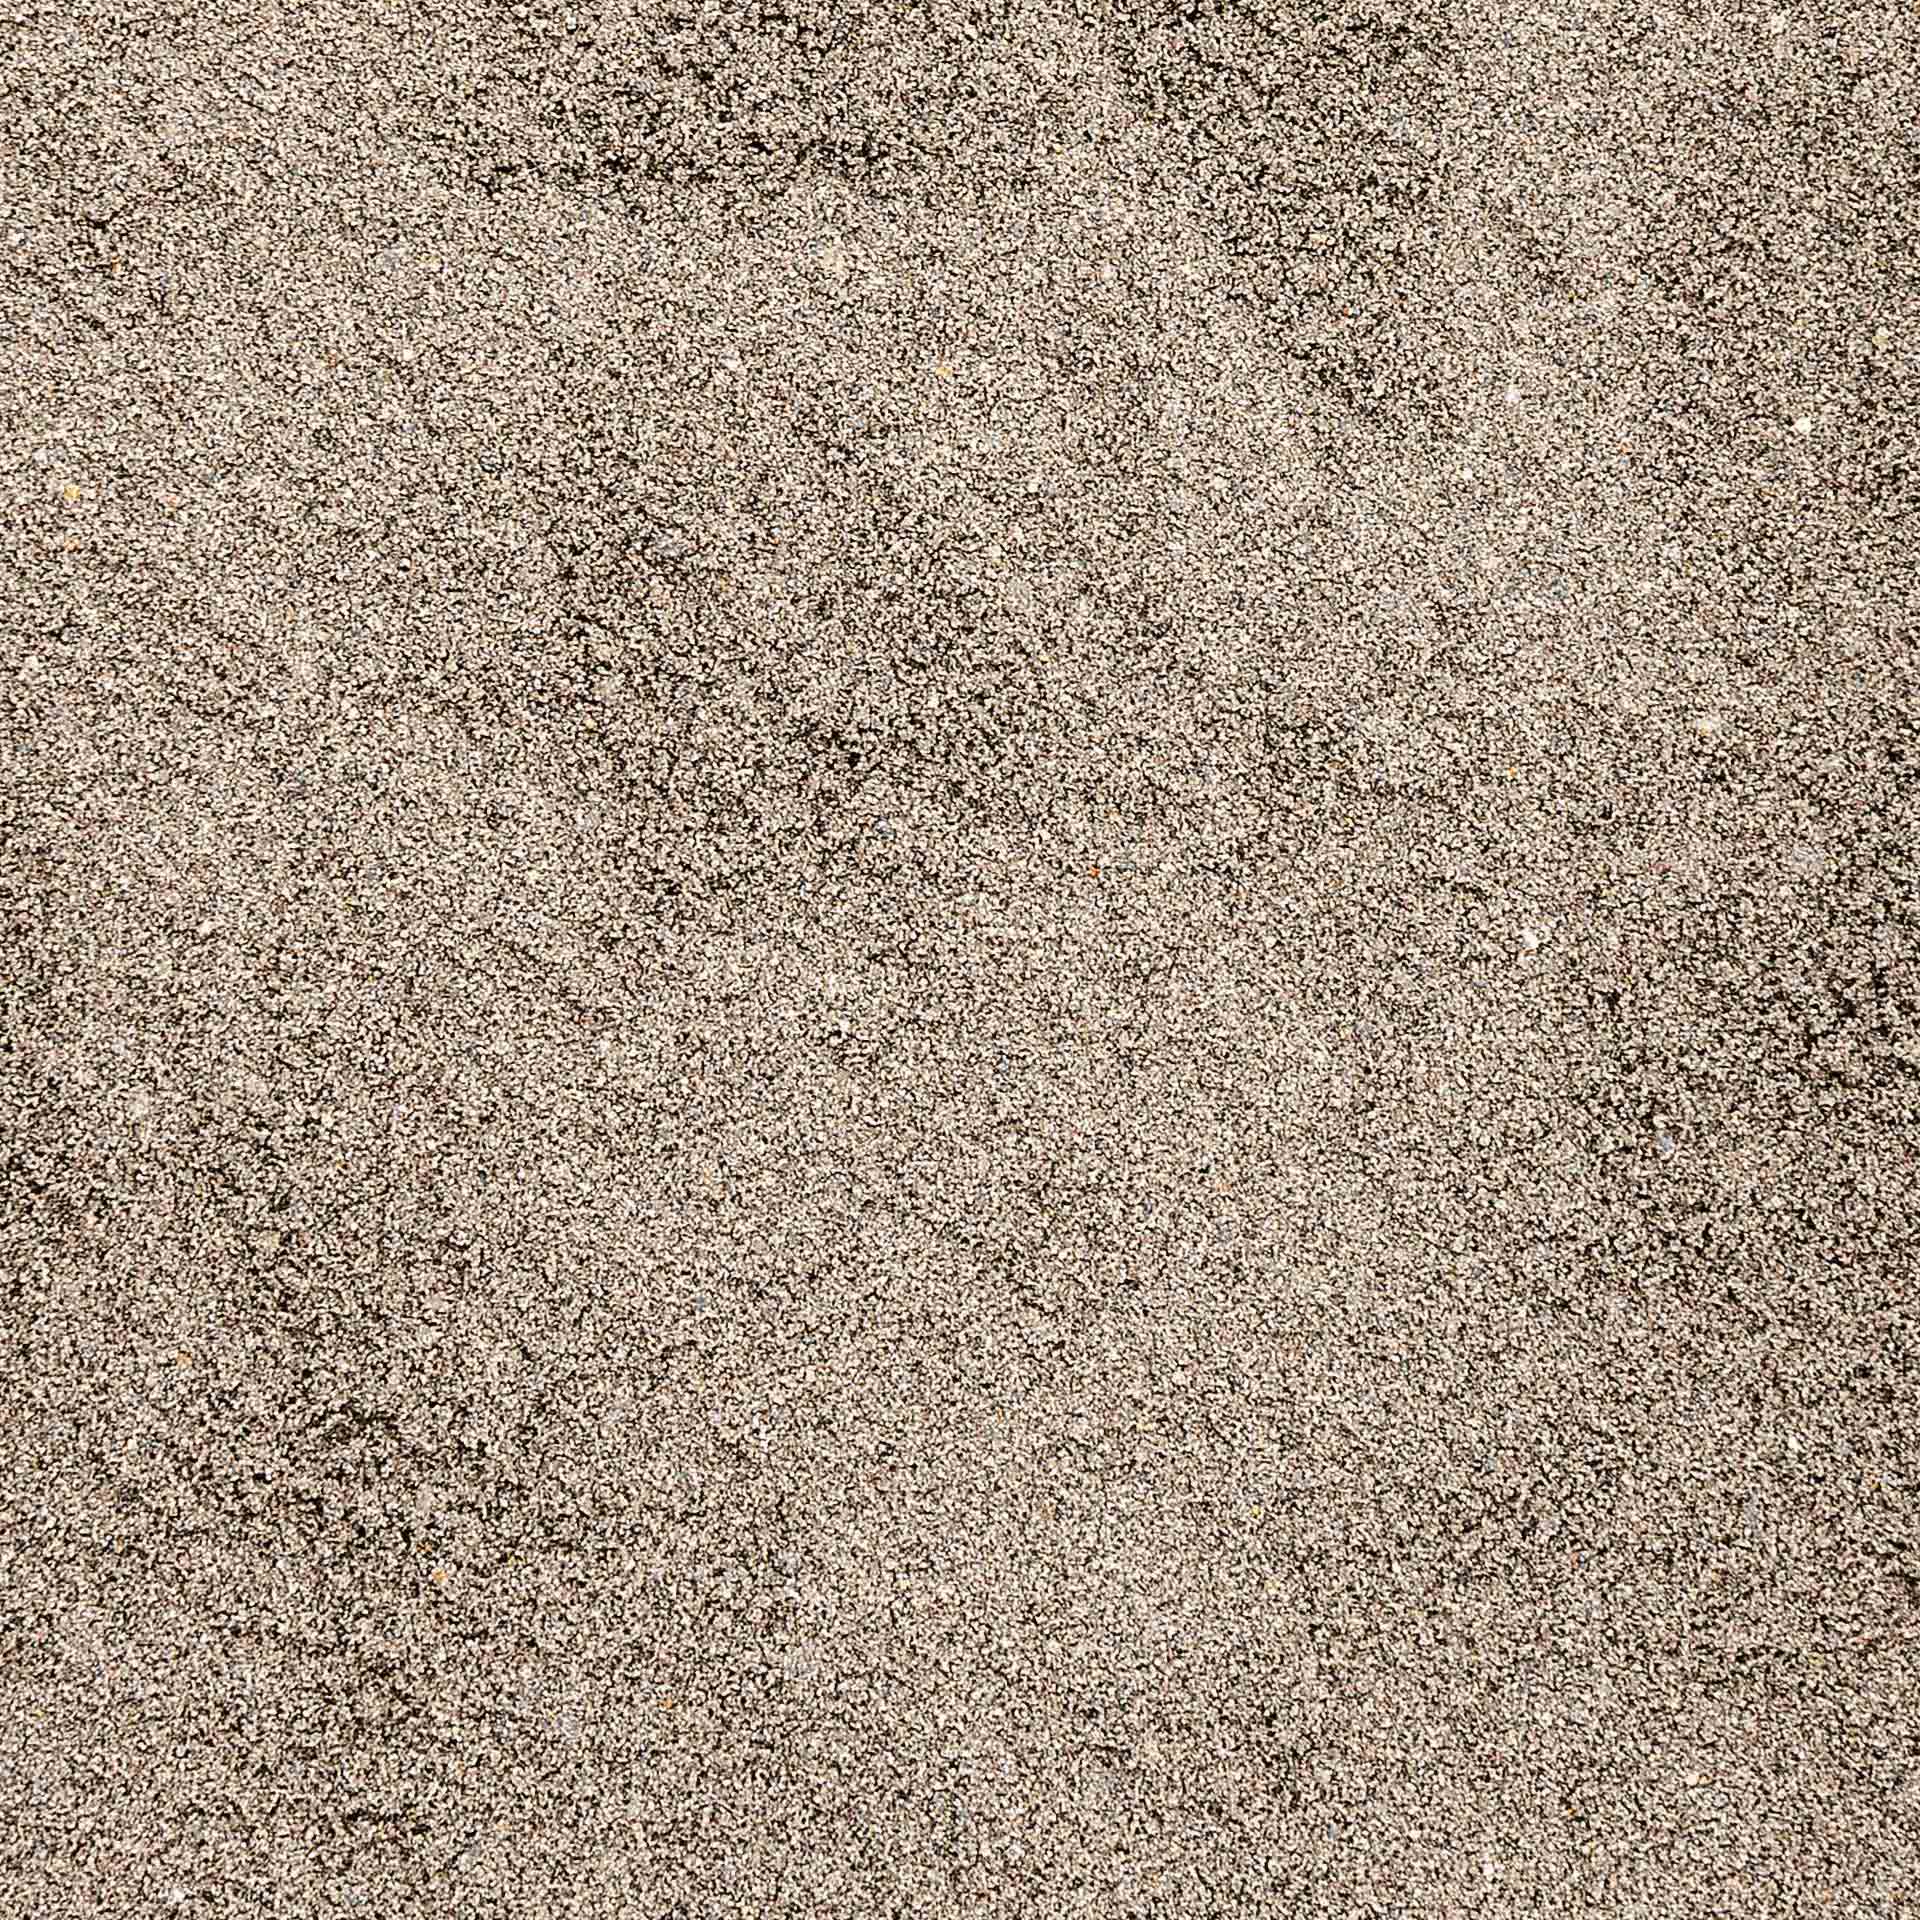 Min2C 25 kg Fugensand anthrazit 0.0-1.0 mm Premium Quarzsand